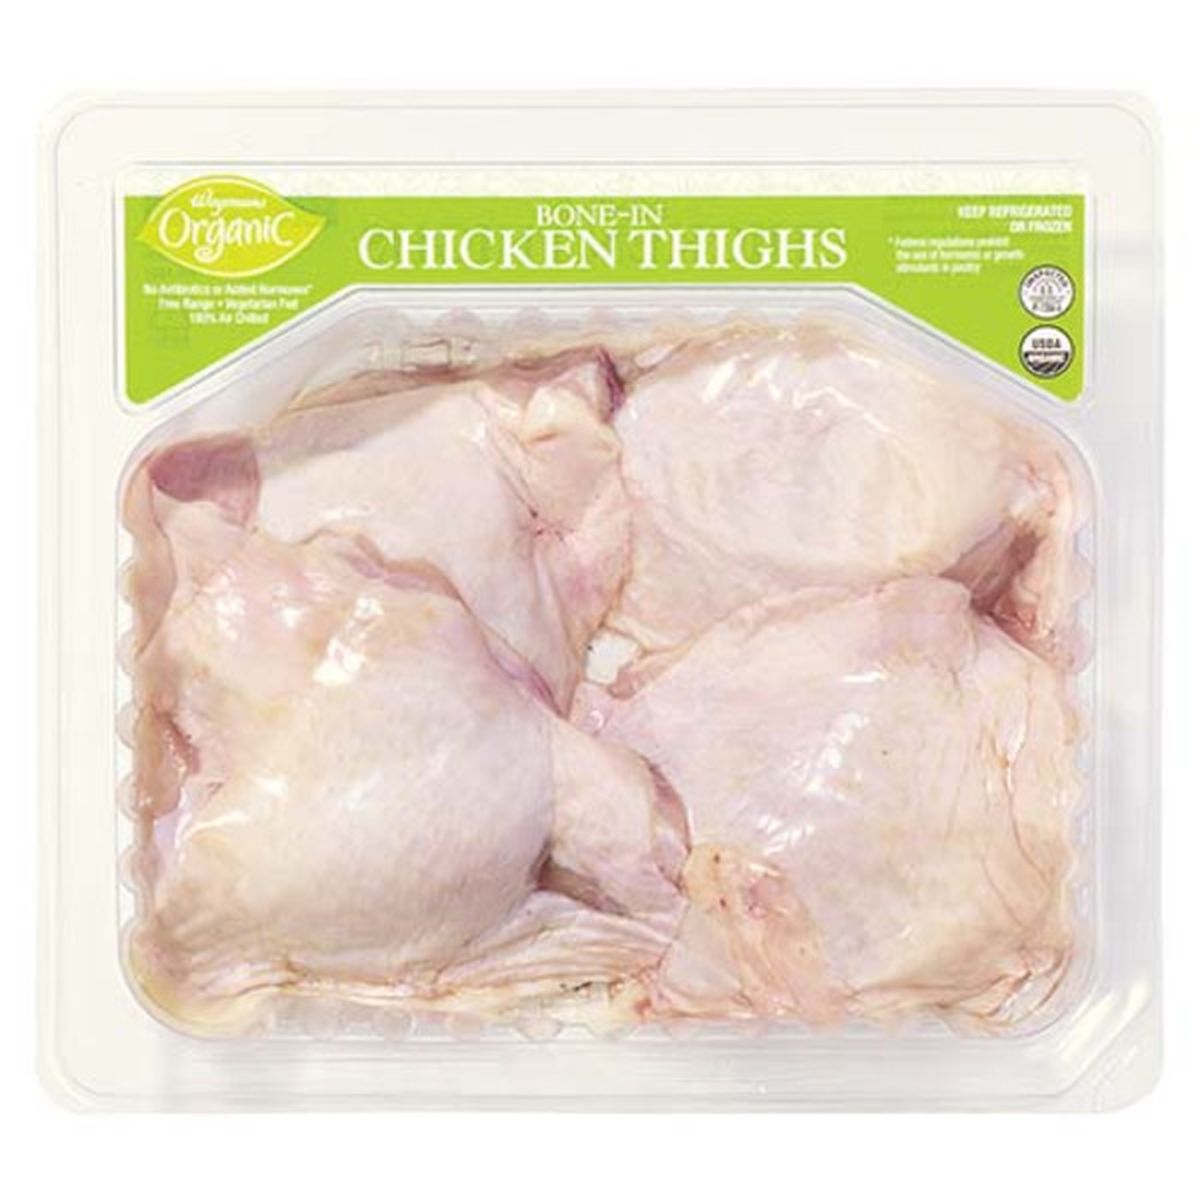 Calories in Wegmans Organic Bone-In Chicken Thighs